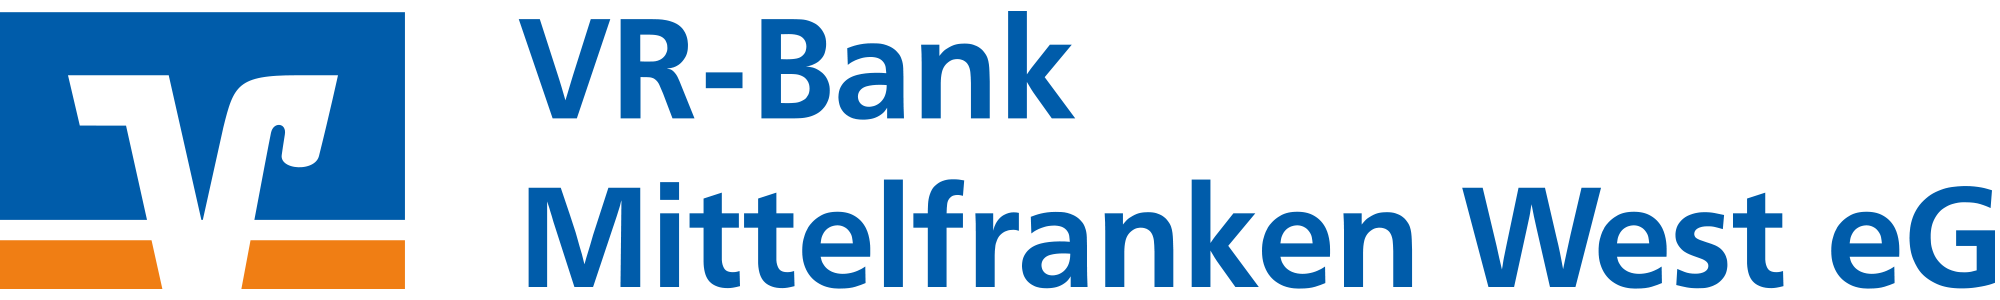 Logo VR-Bank Mittelfranken West eG